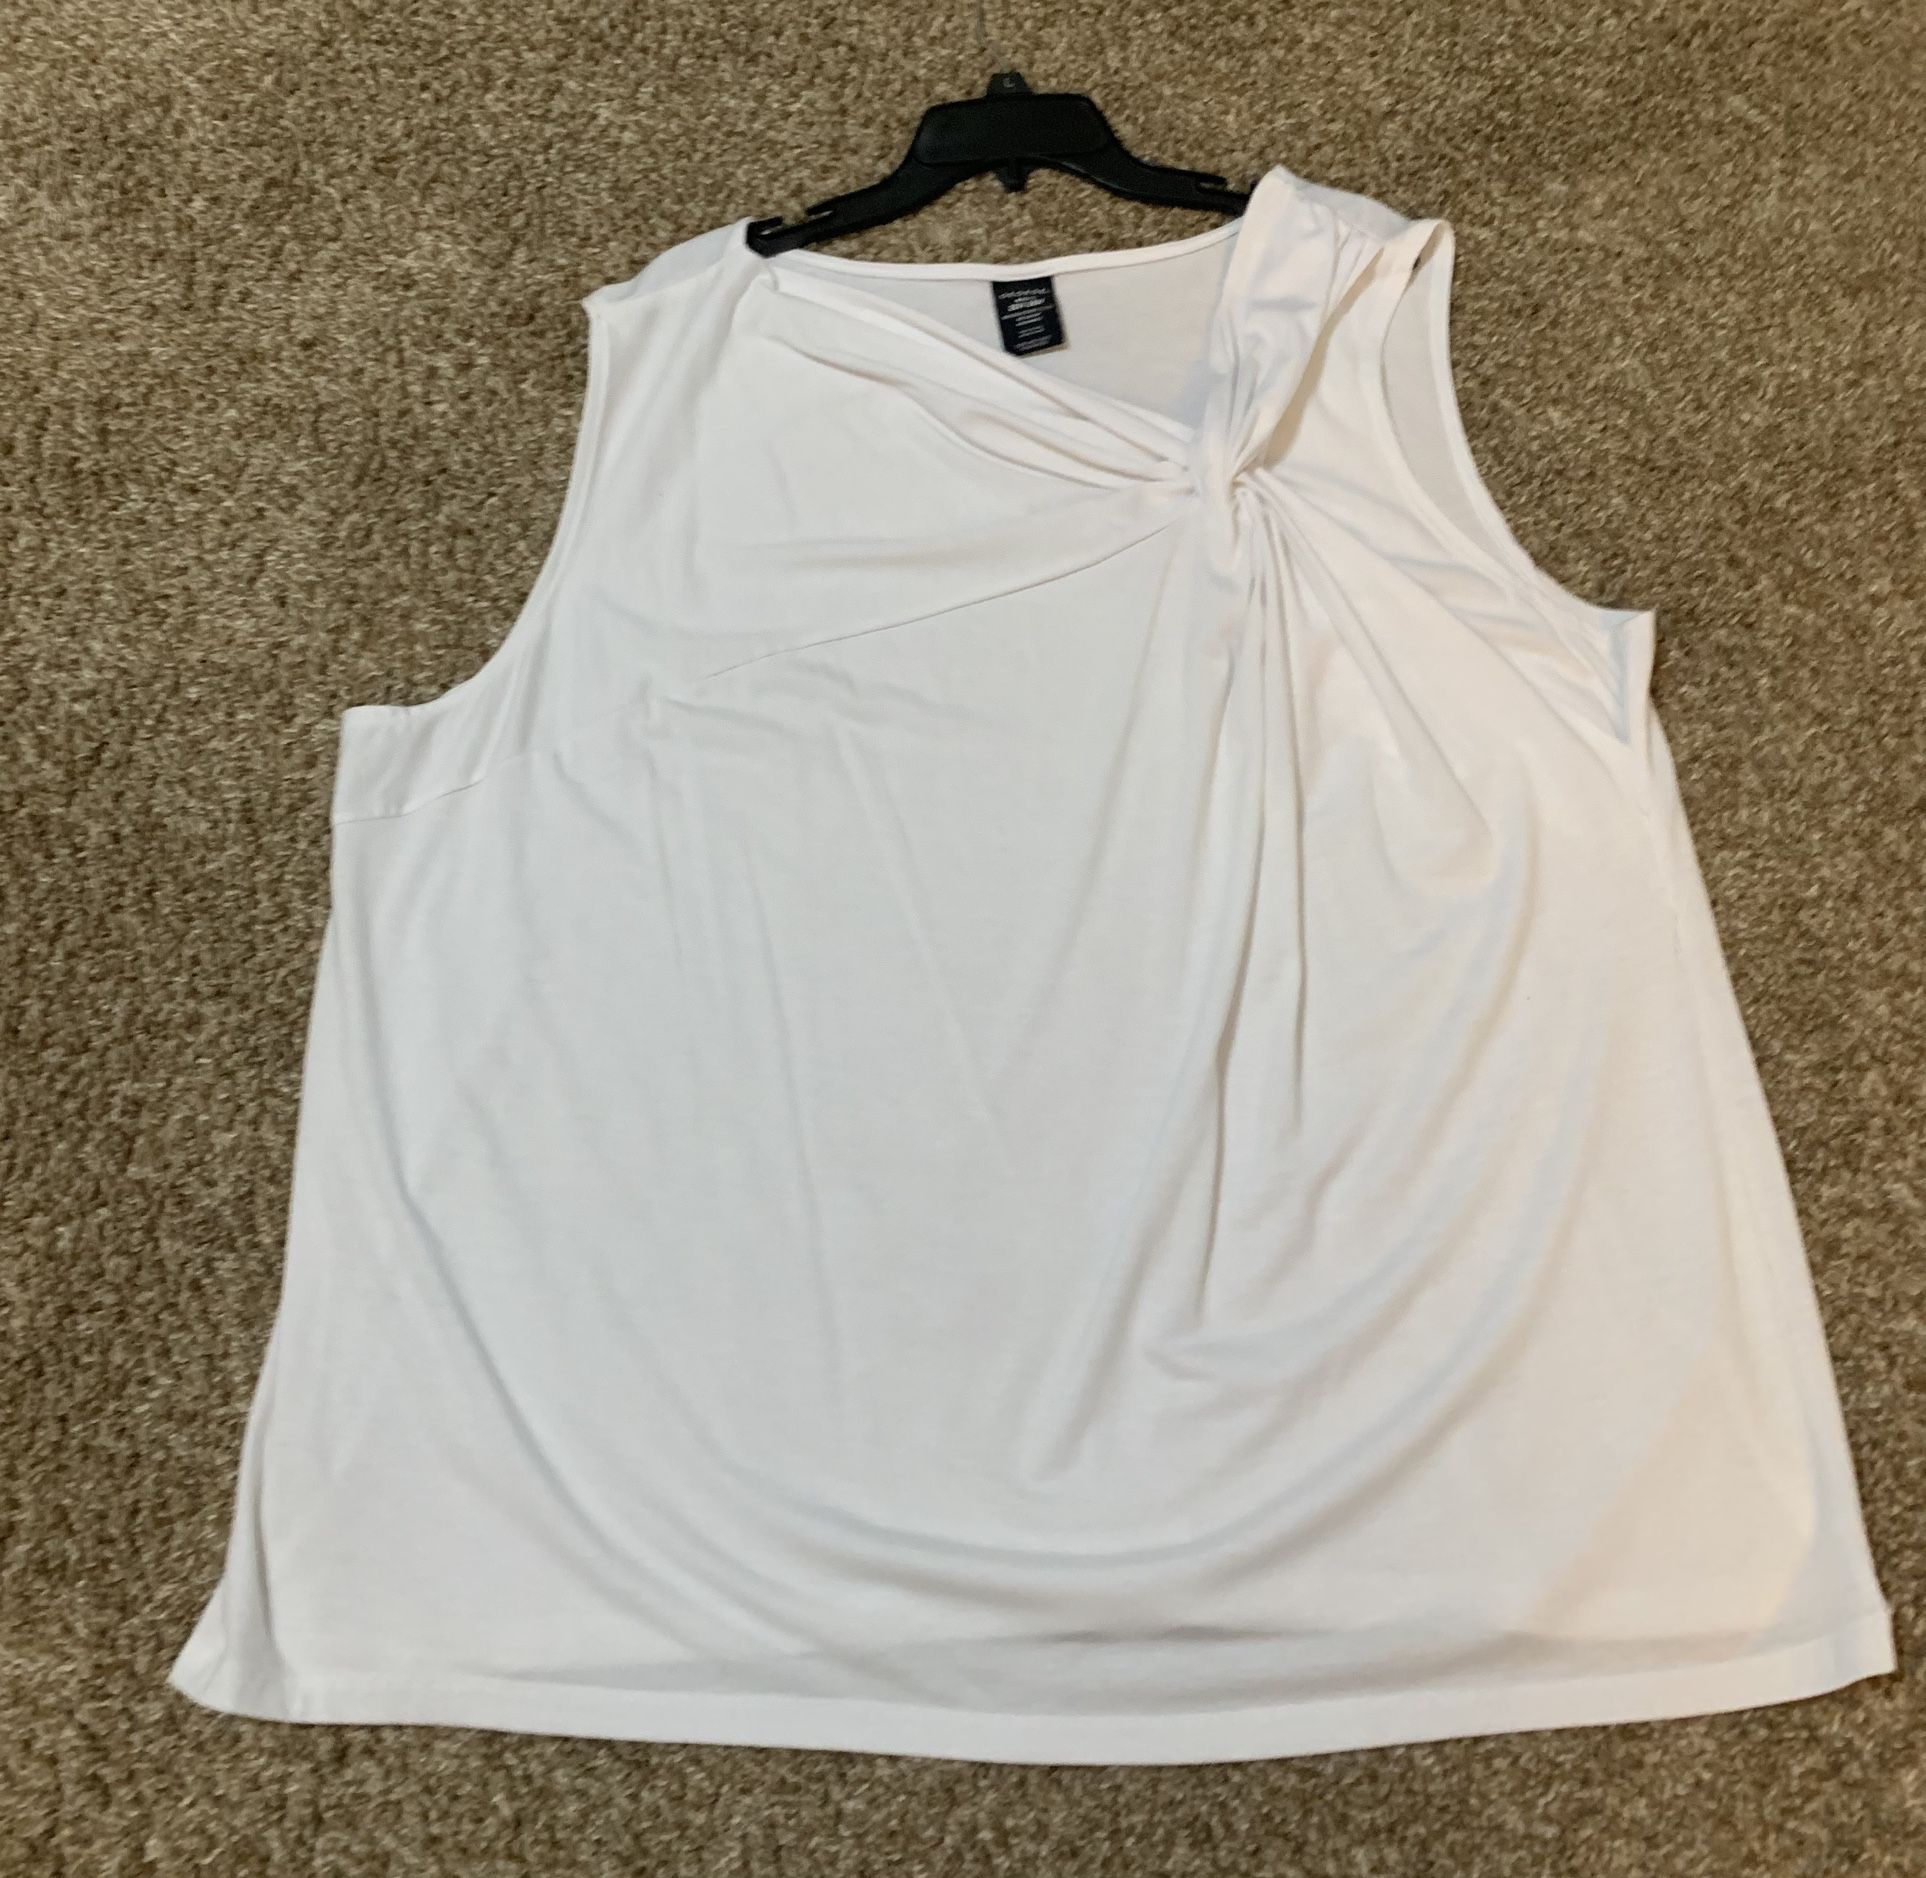 Gorgeous sleeveless size 26/28 white top